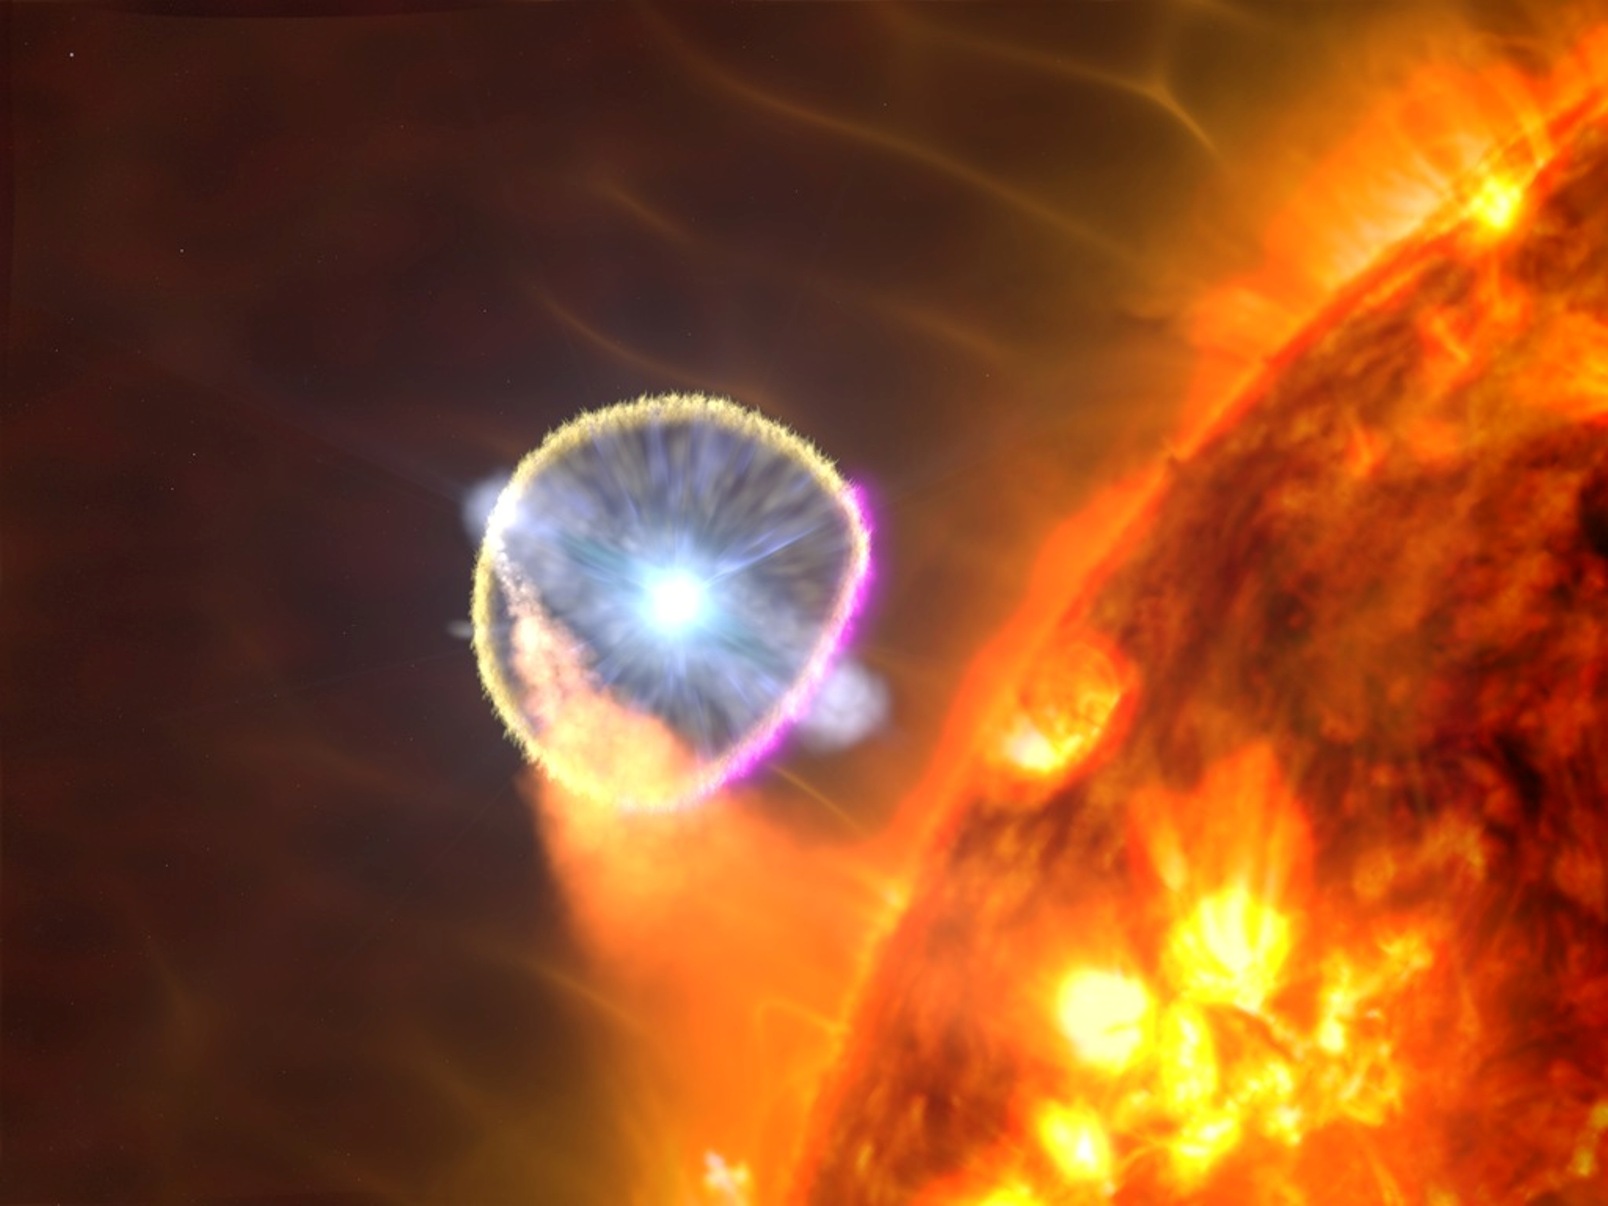 L'étoile naine blanche du V407 Cygni, illustrée ici dans le concept d'un artiste, est devenue nova en 2010. Les scientifiques pensent que l'explosion a principalement émis des rayons gamma (magenta) lorsque l'onde de souffle a traversé l'environnement riche en gaz près de l'étoile géante rouge du système. © Goddard Space Flight Center / S de la NASA. Wiessinger